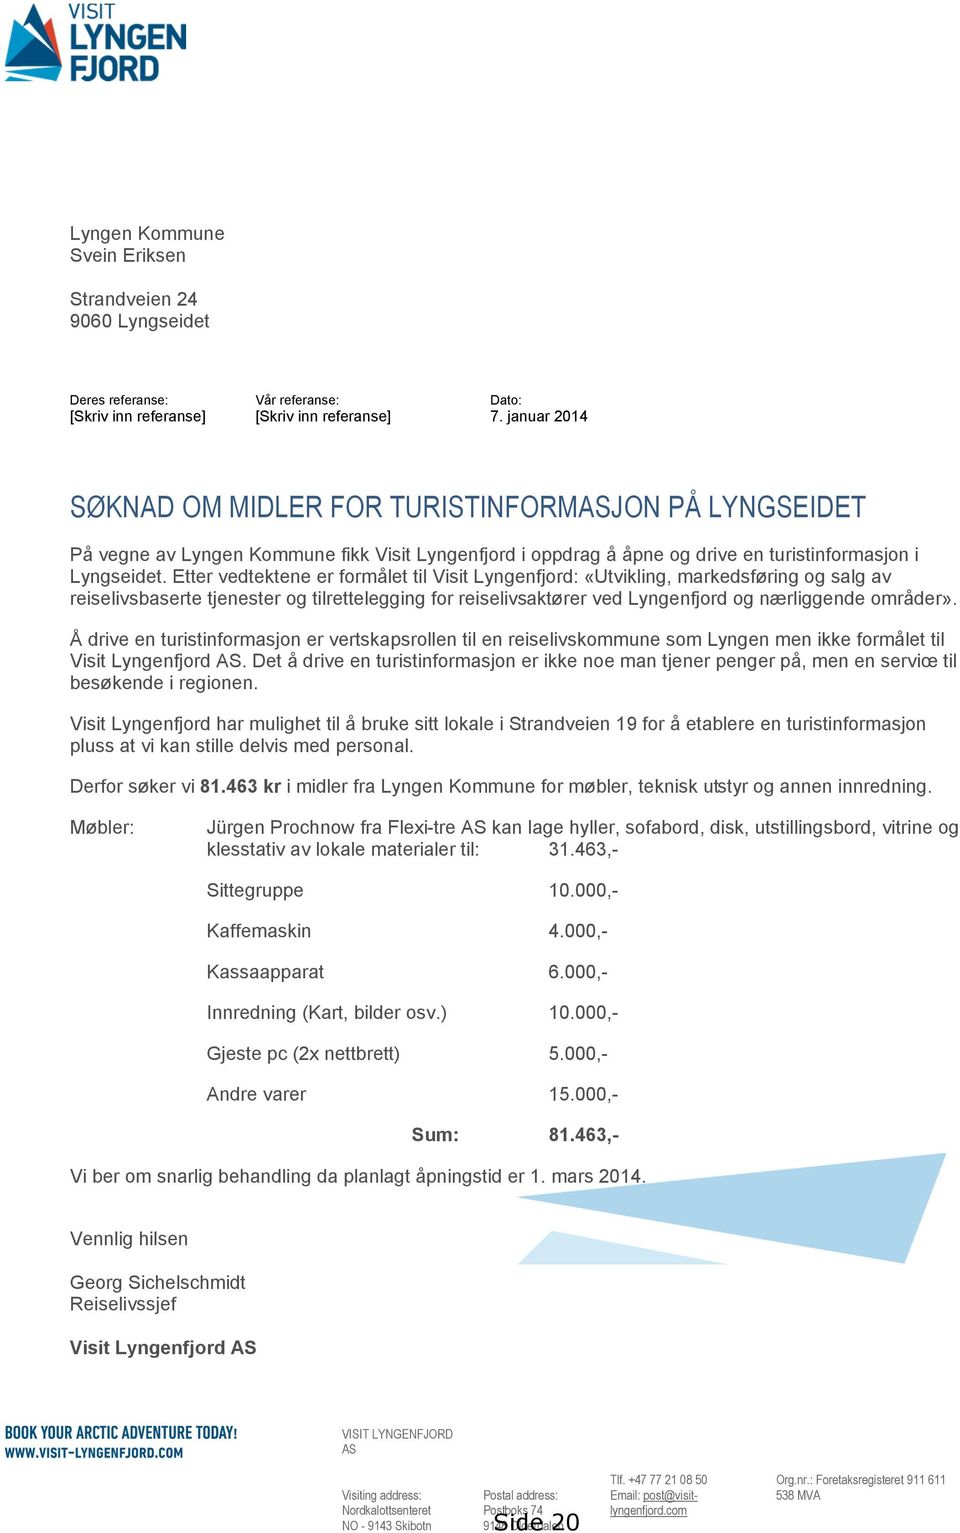 Etter vedtektene er formålet til Visit Lyngenfjord: «Utvikling, markedsføring og salg av reiselivsbaserte tjenester og tilrettelegging for reiselivsaktører ved Lyngenfjord og nærliggende områder».